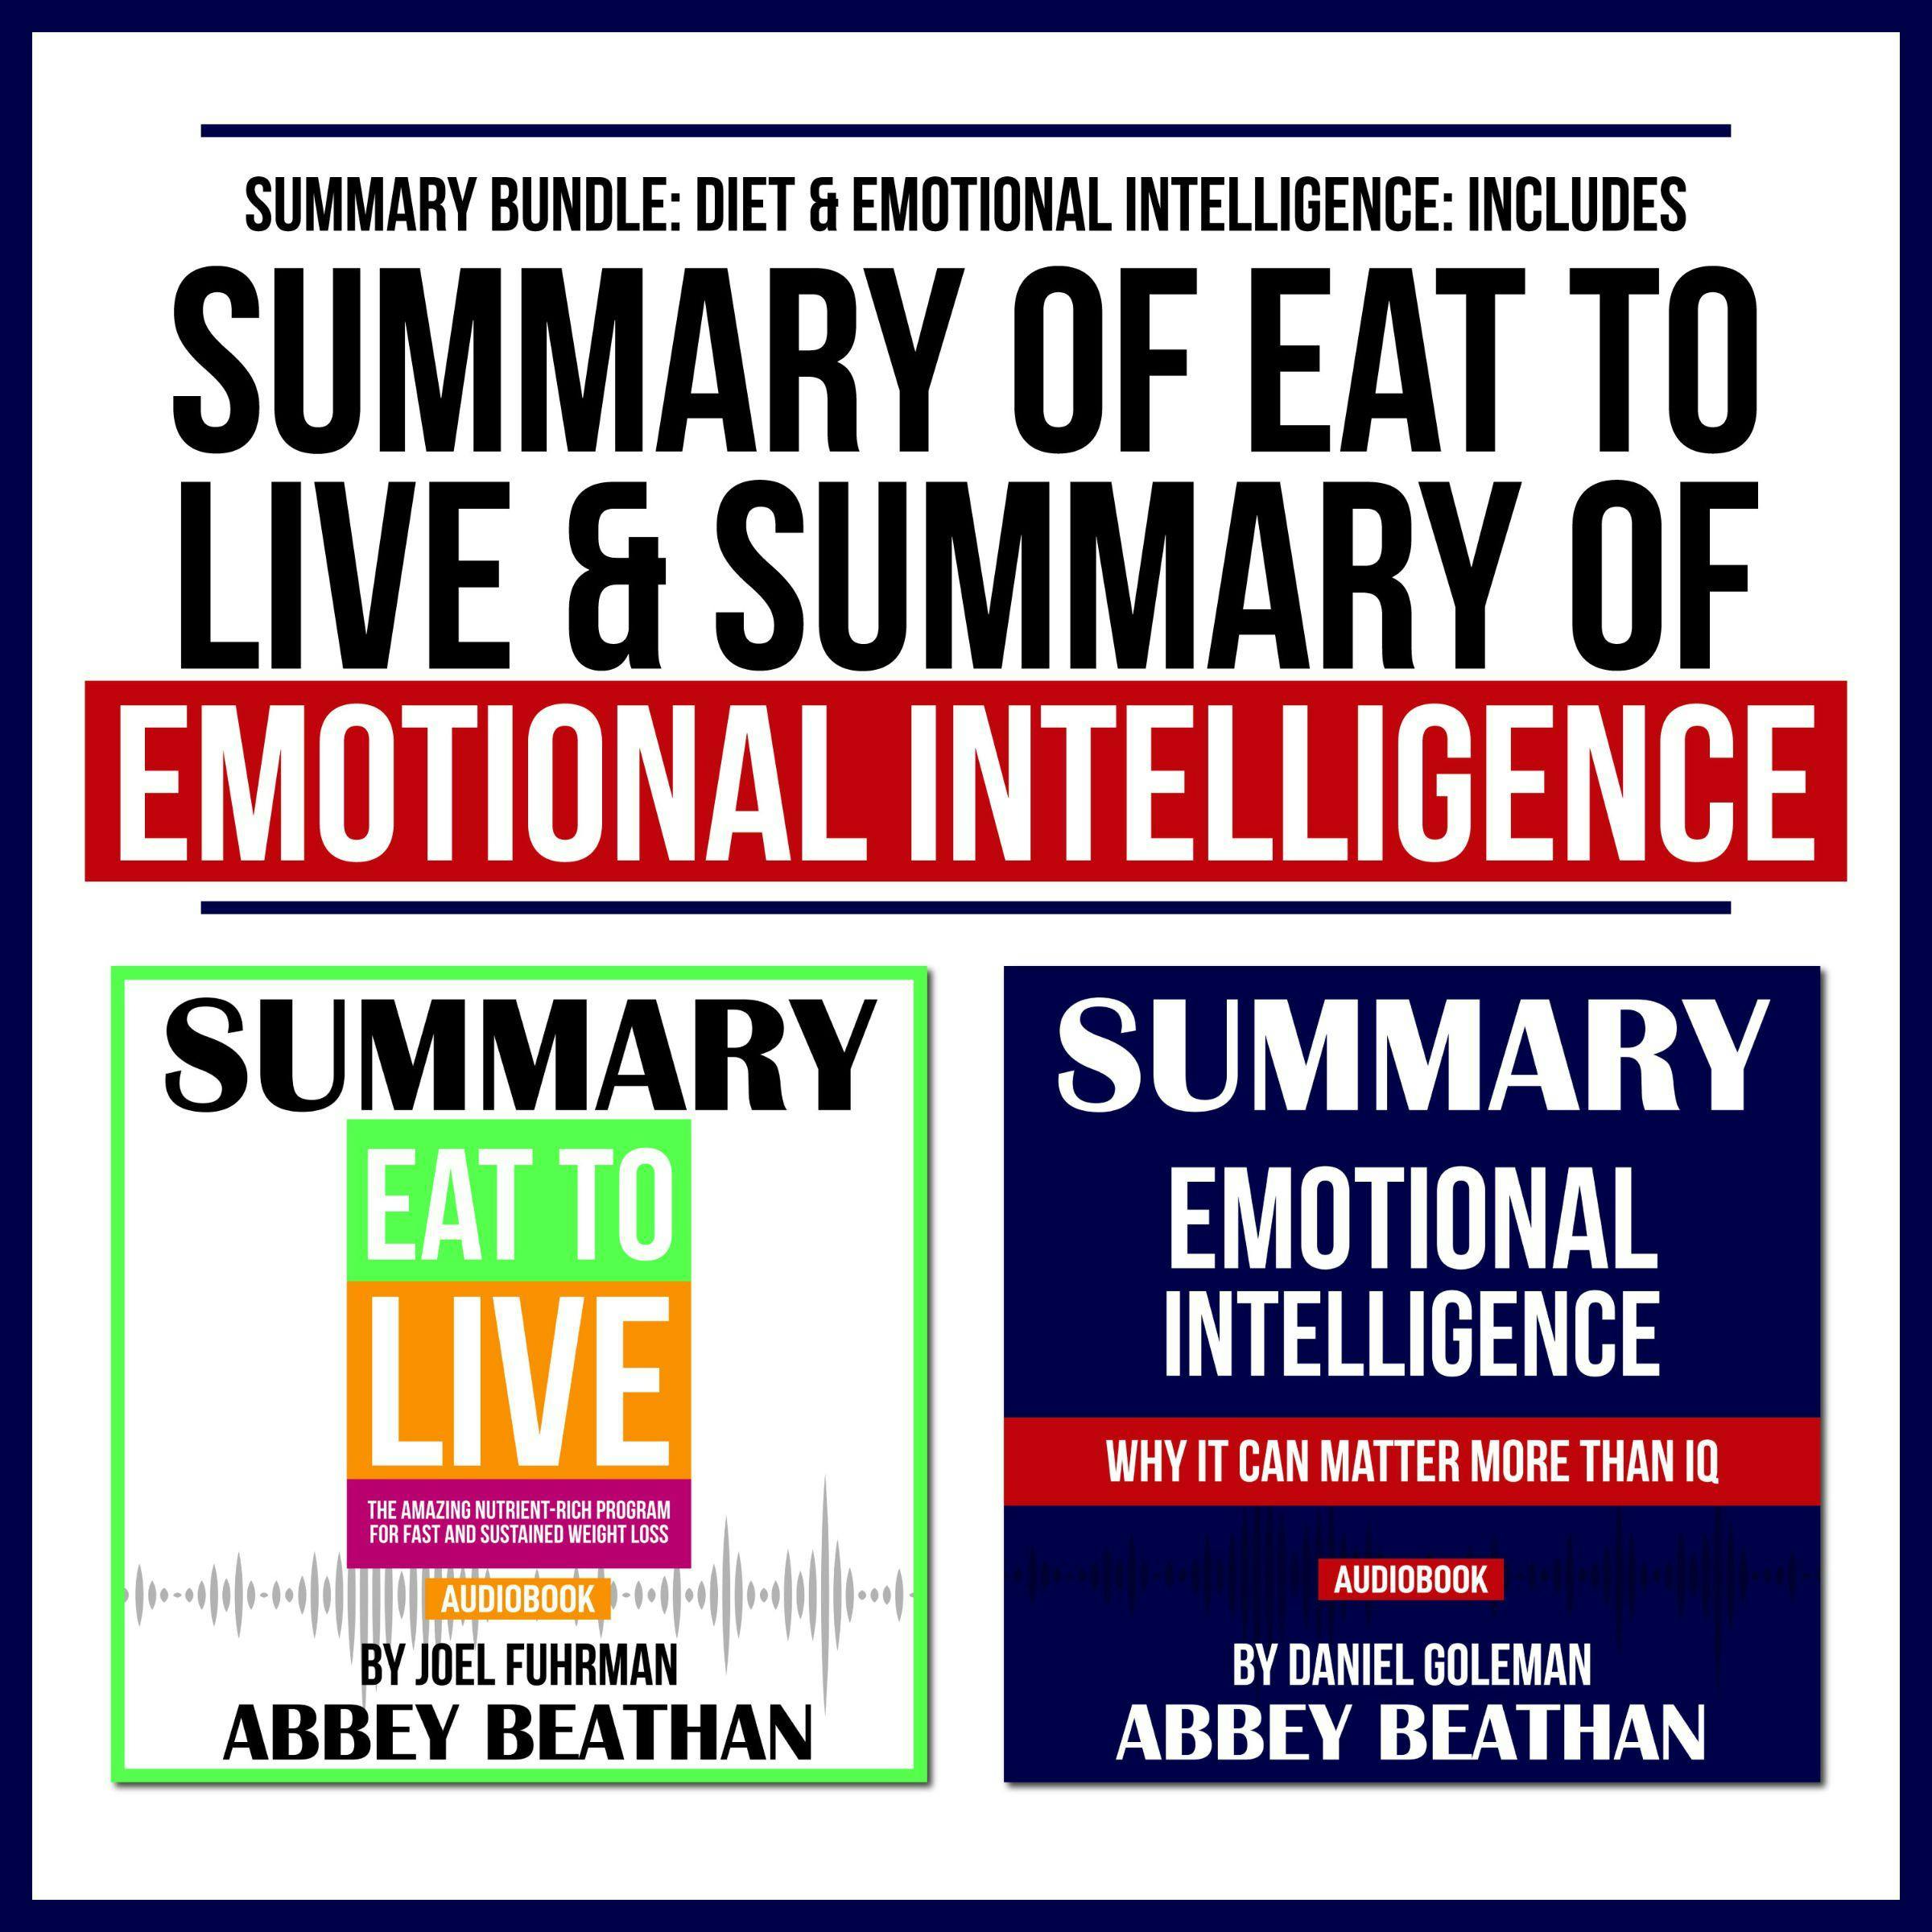 Summary Bundle: Diet & Emotional Intelligence: Includes Summary of Eat to Live & Summary of Emotional Intelligence - Abbey Beathan Publishing